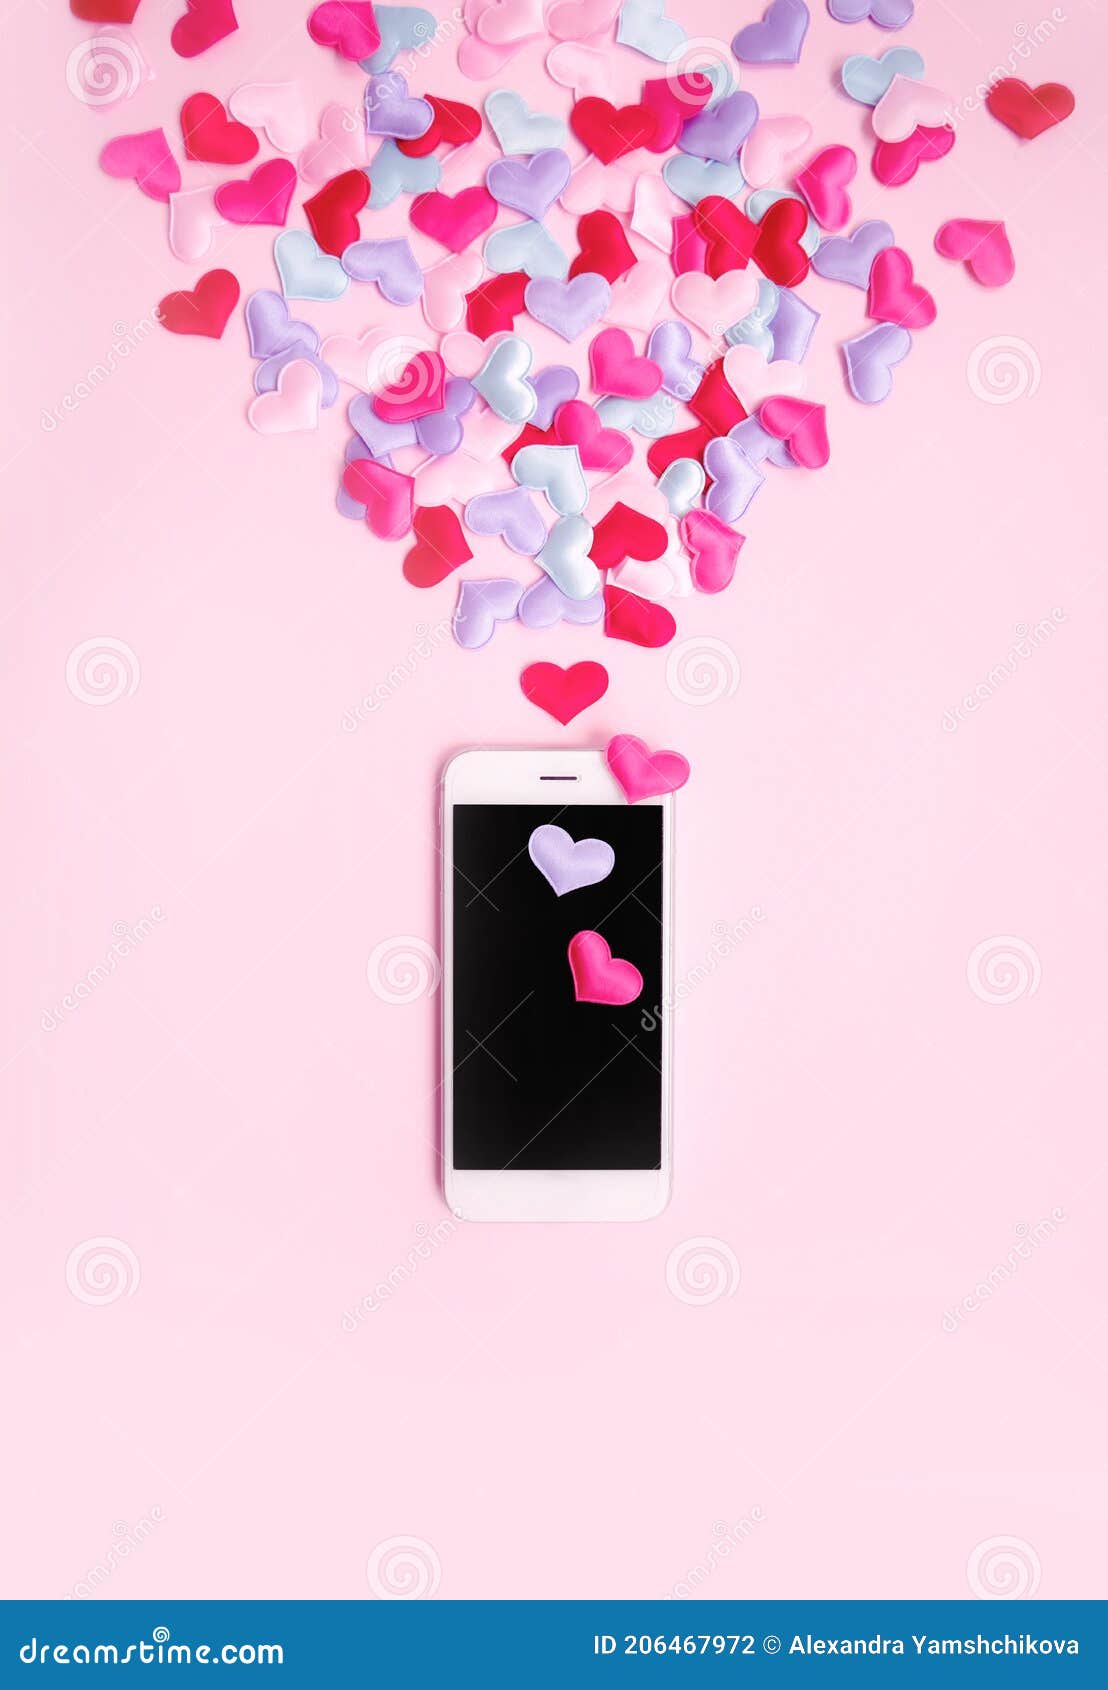 Fondo De Pantalla Móvil De Tema Romántico Vertical. Banner Del Día De San  Valentín 2021 14 De Febrero Fecha. Mensajes De Amor. Cha Foto de archivo -  Imagen de papel, usted: 206467972